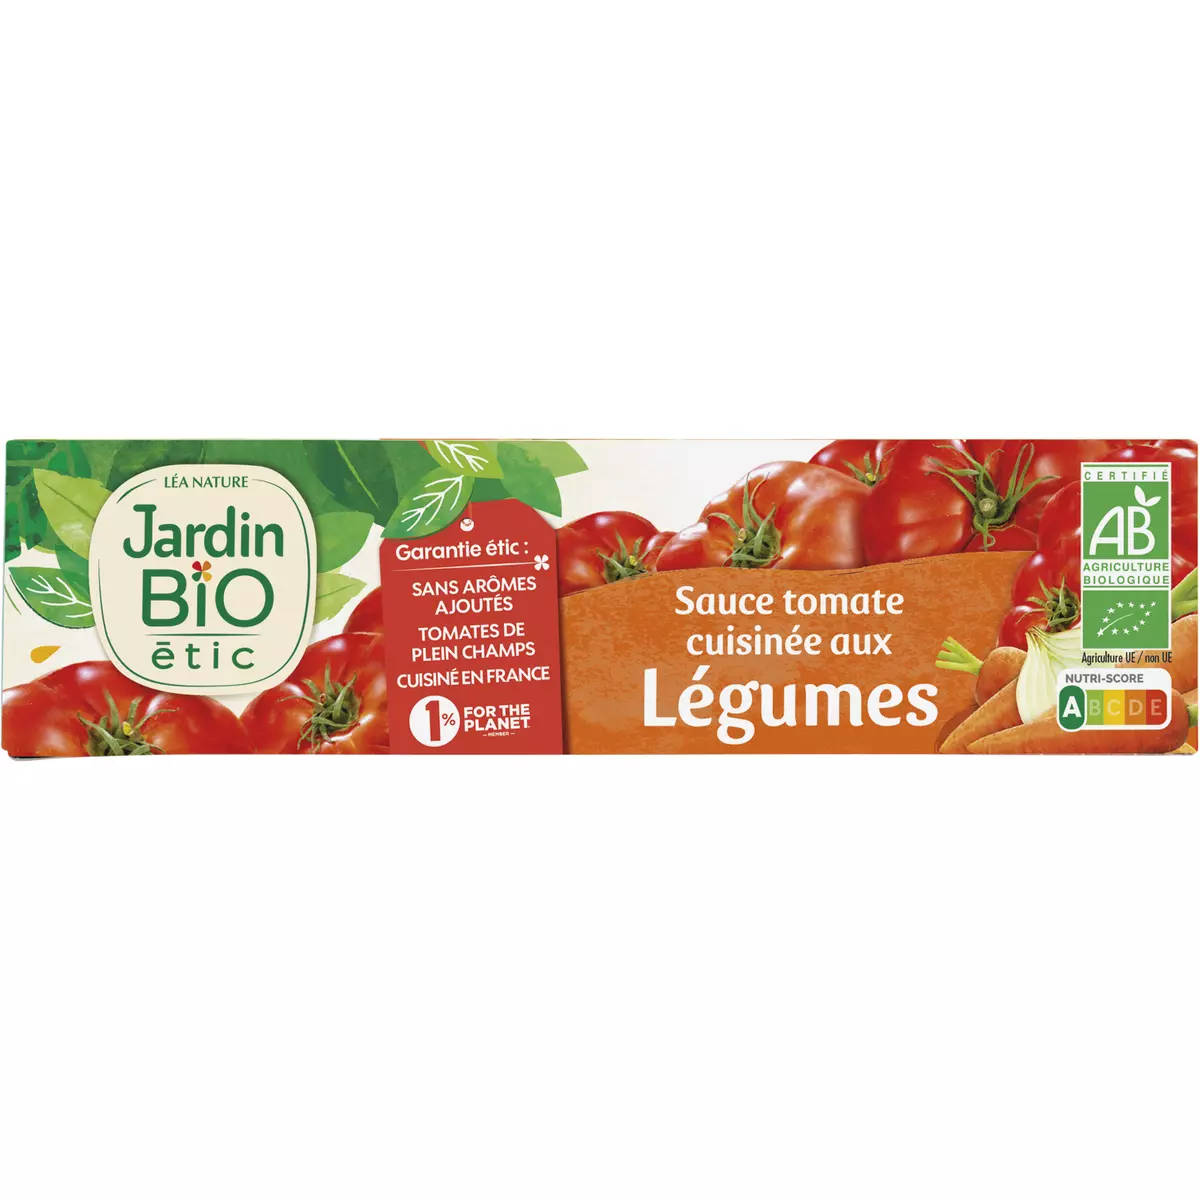 JARDIN BIO ETIC Sauce tomate cuisinée aux légumes fabriqué en France sans additif en tube 180g